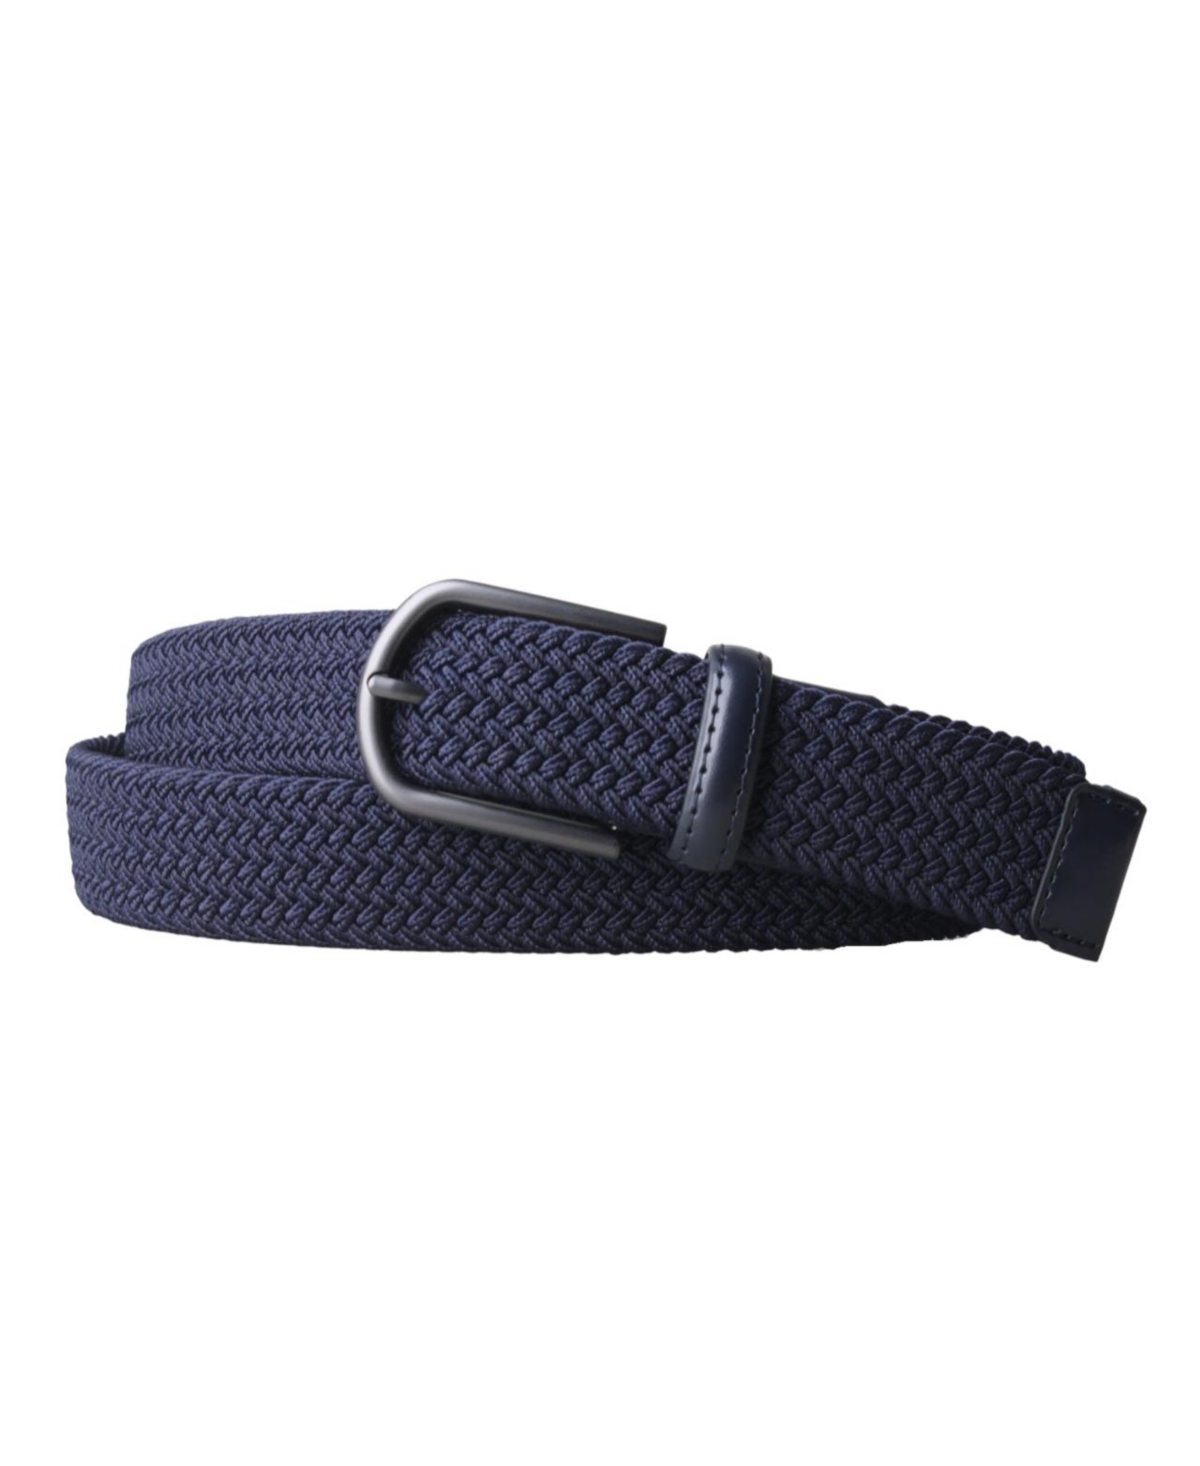 Men's Clothing Braided Stretch 3.5 Cm Belt - Navy